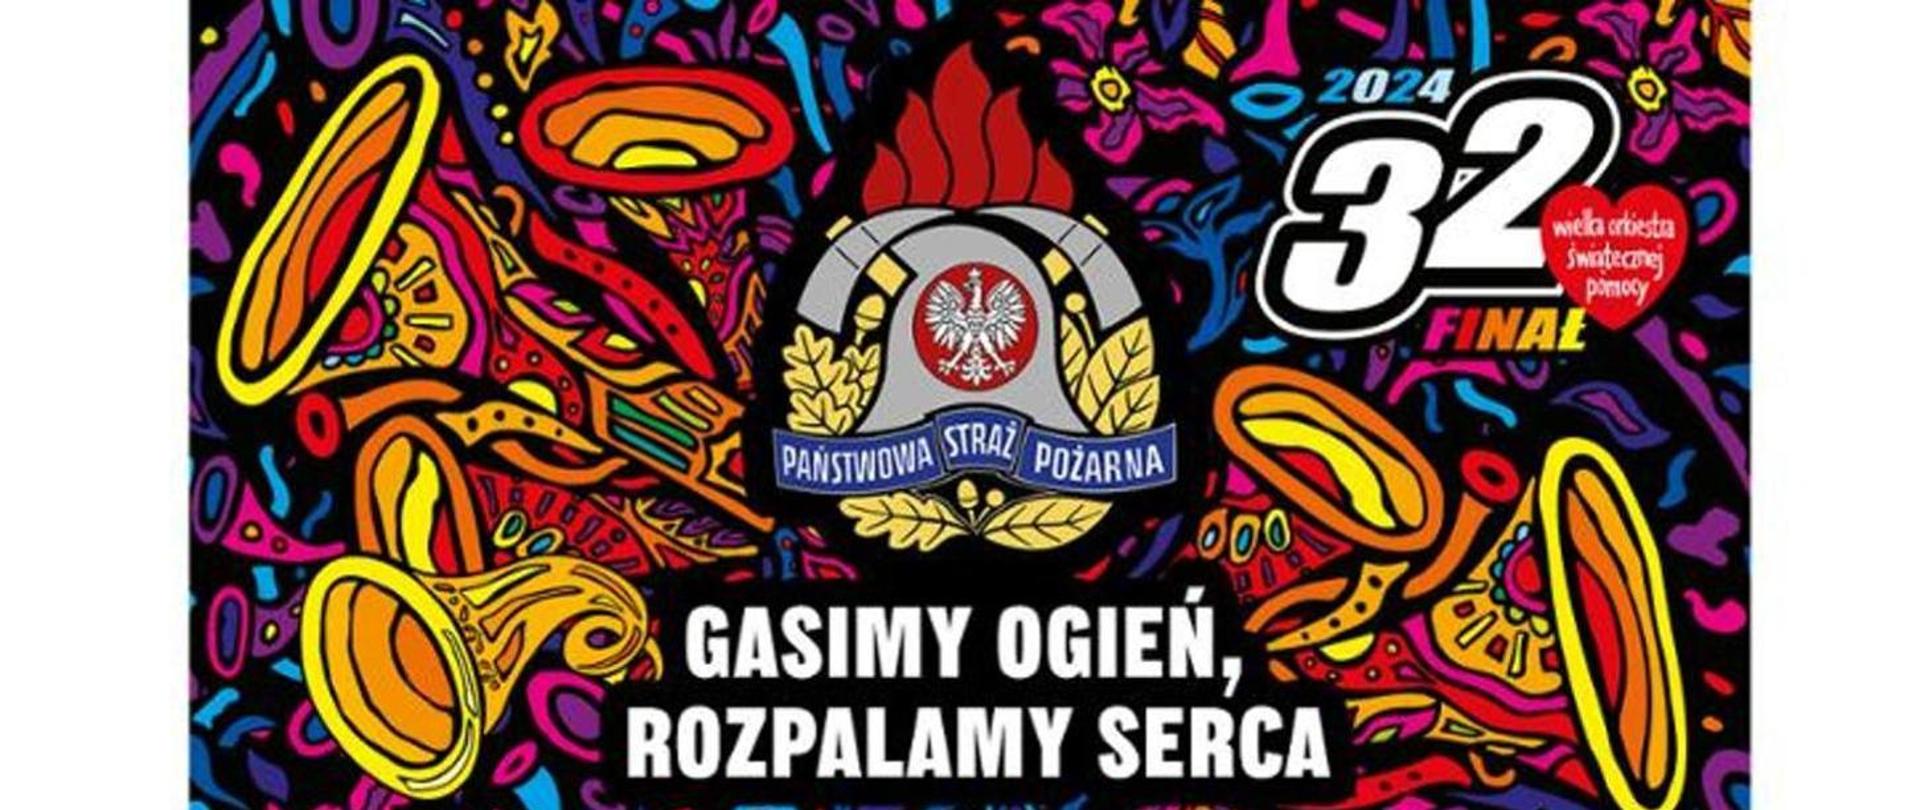 baner 32 finału WOŚP z napisem "Gasimy ogień, rozpalamy serca".